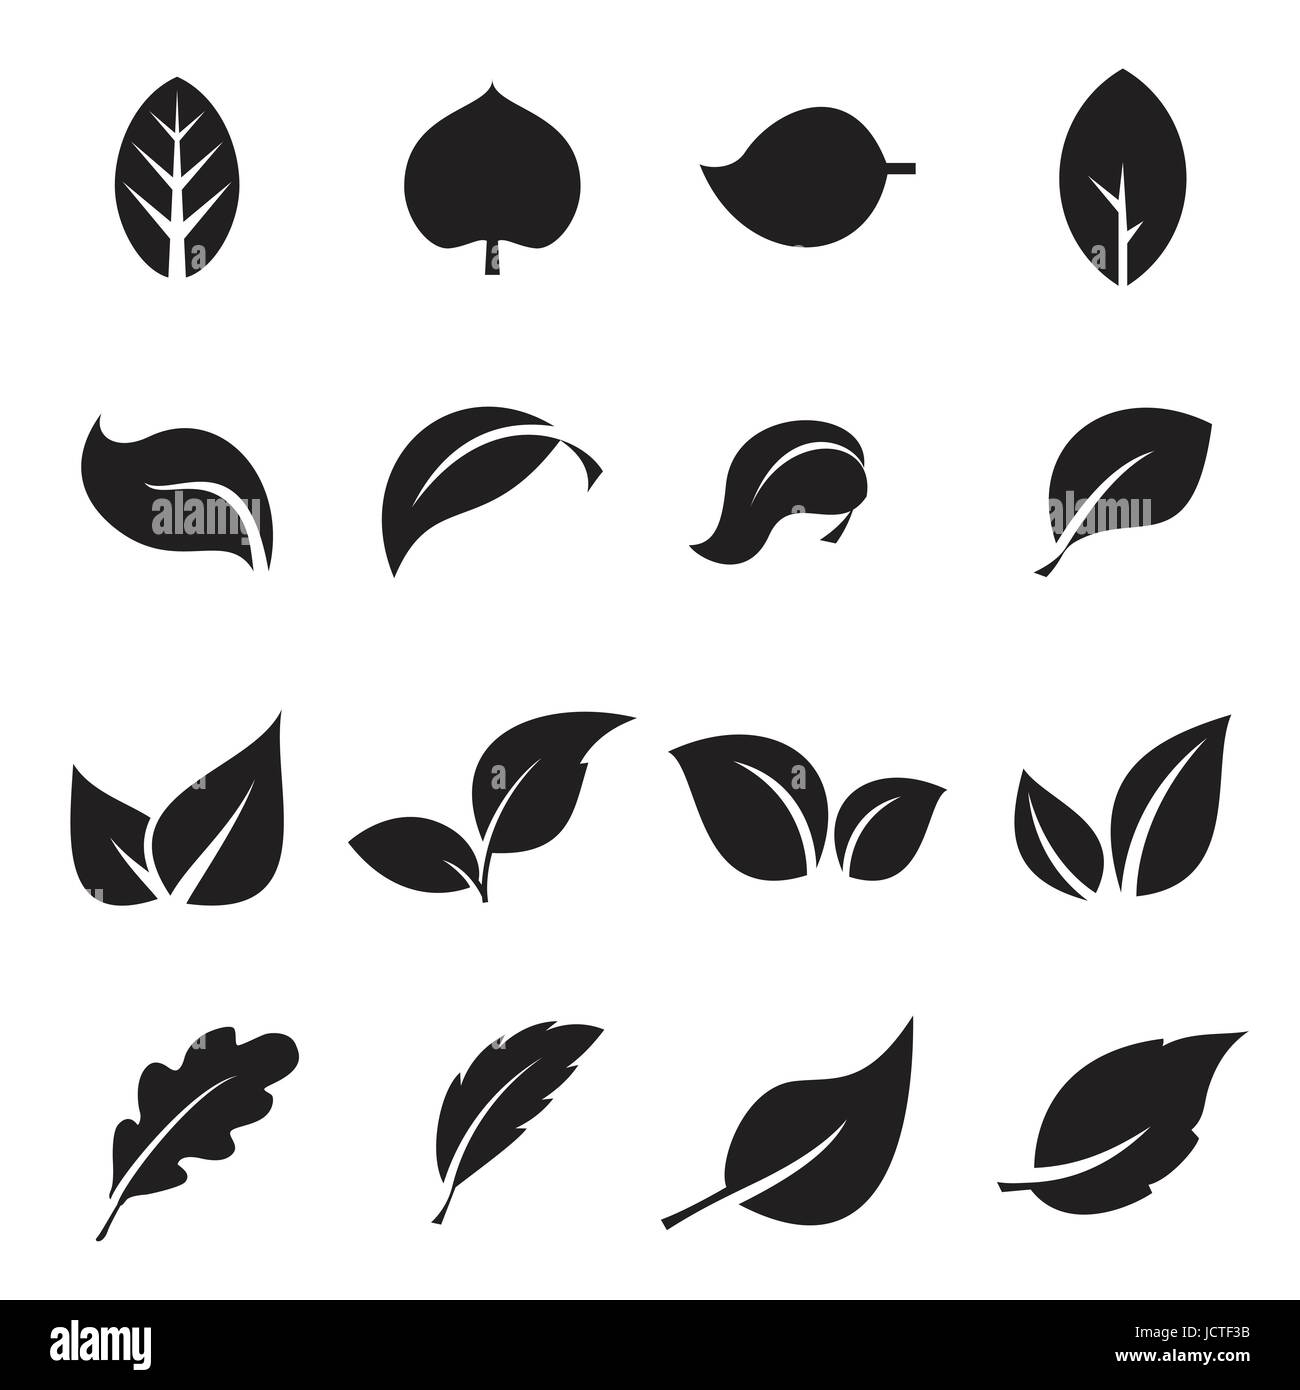 Sammlung von Icons Blatt. Schwarze Symbole auf einem weißen Hintergrund isoliert. Vektor-illustration Stock Vektor